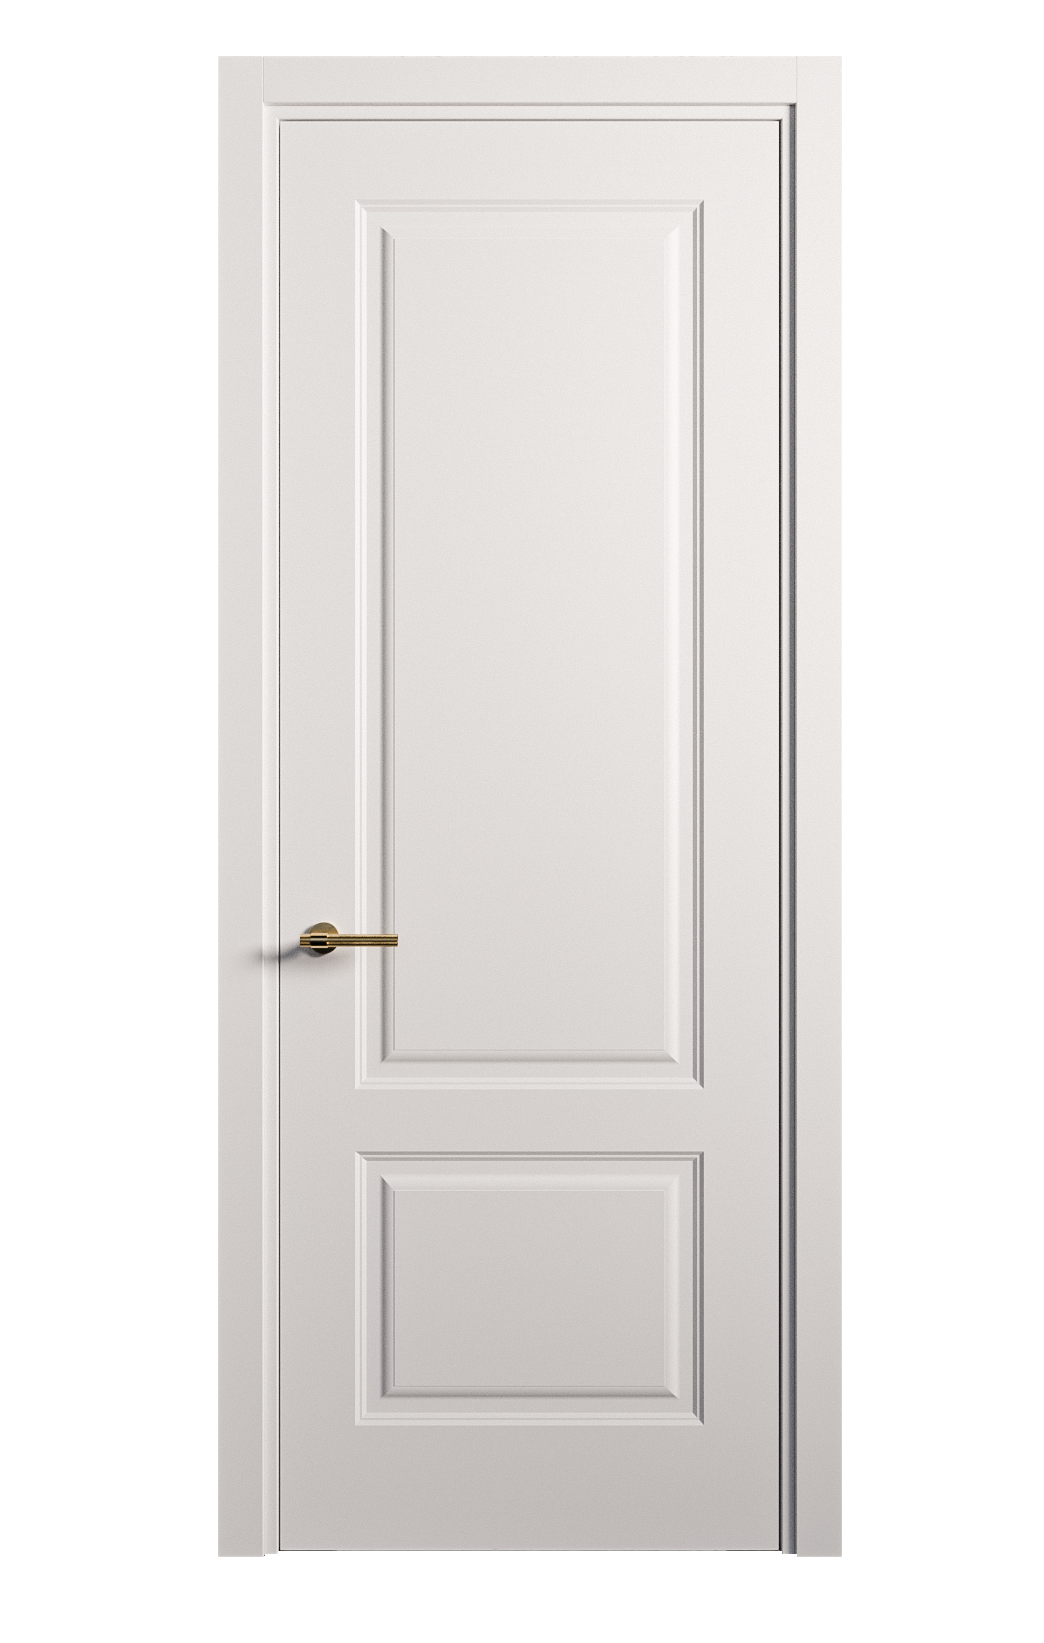 Межкомнатная дверь Вита-1 глухая эмаль ral 9003 26276